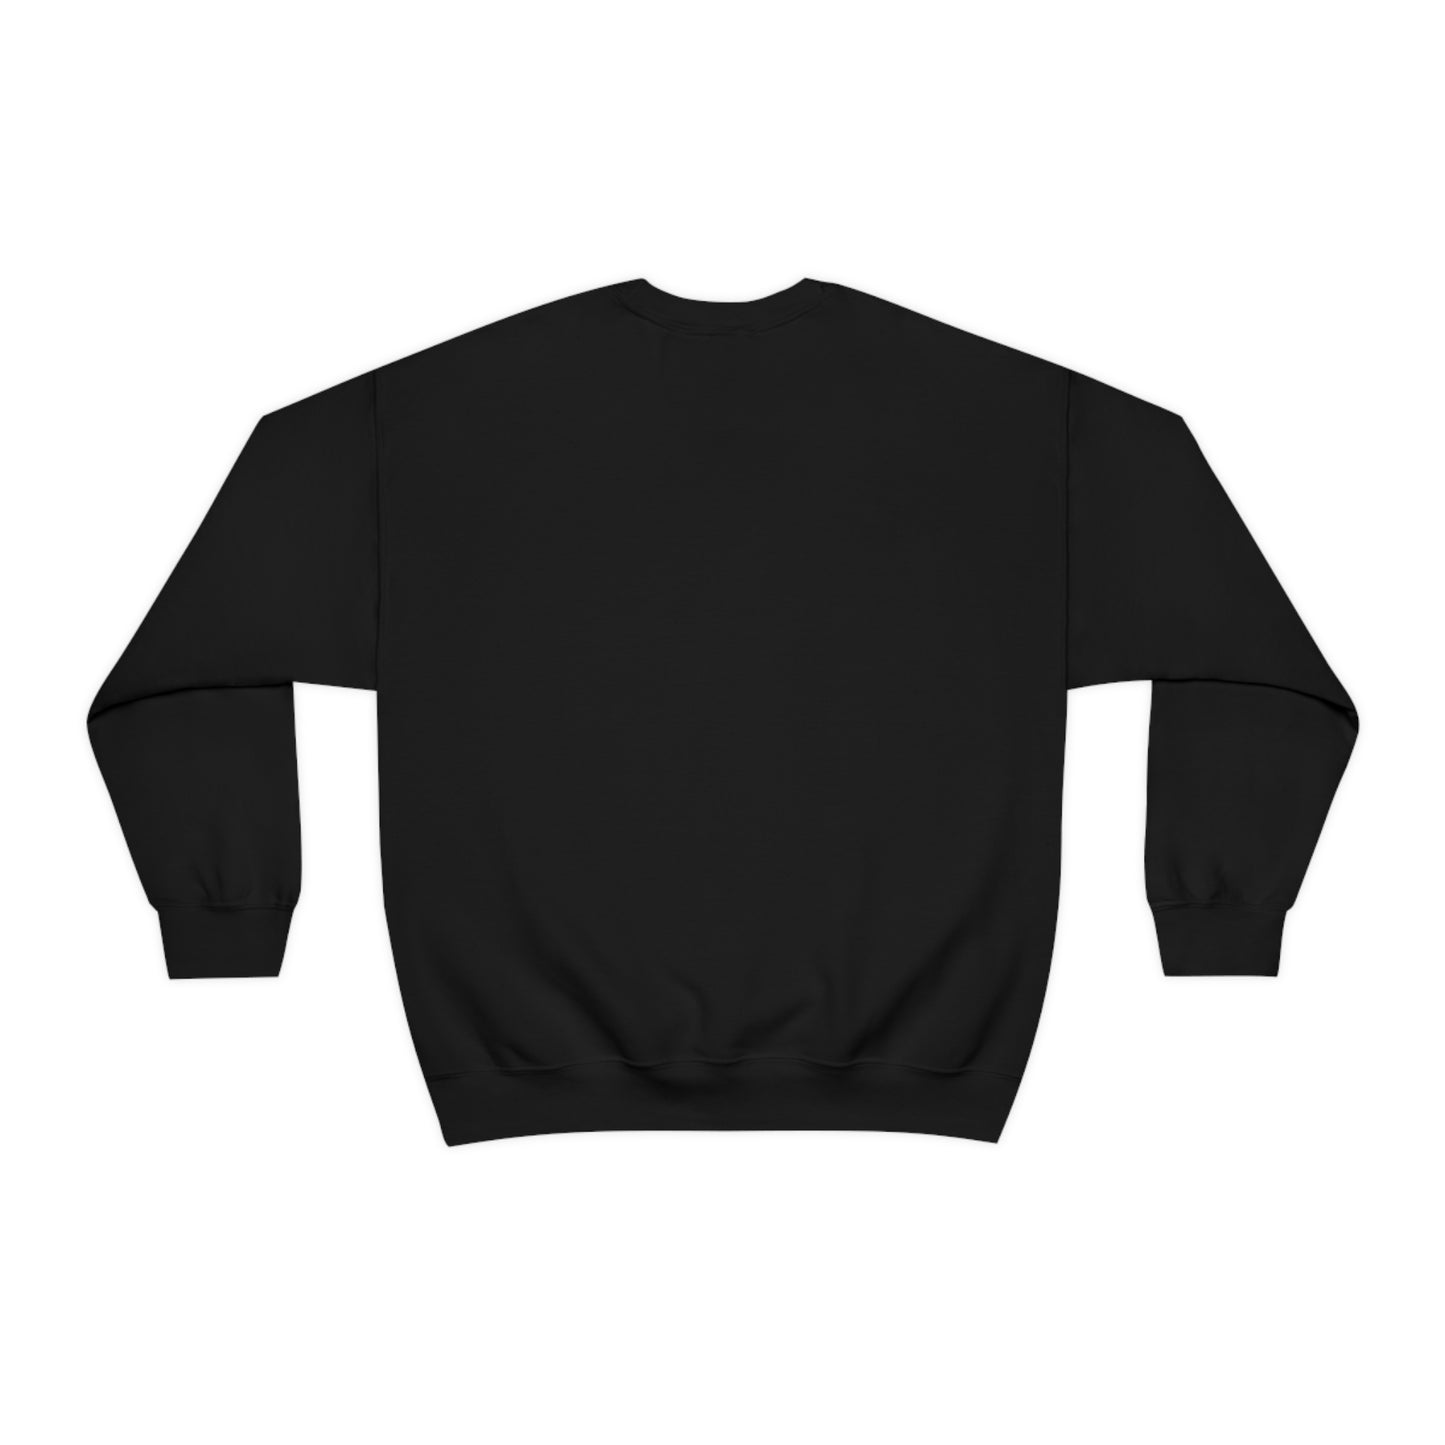 Unisex Crewneck Sweatshirt, Bible Verse Sweatshirt, Loose Fitting Long Sleeve Sweatshirt